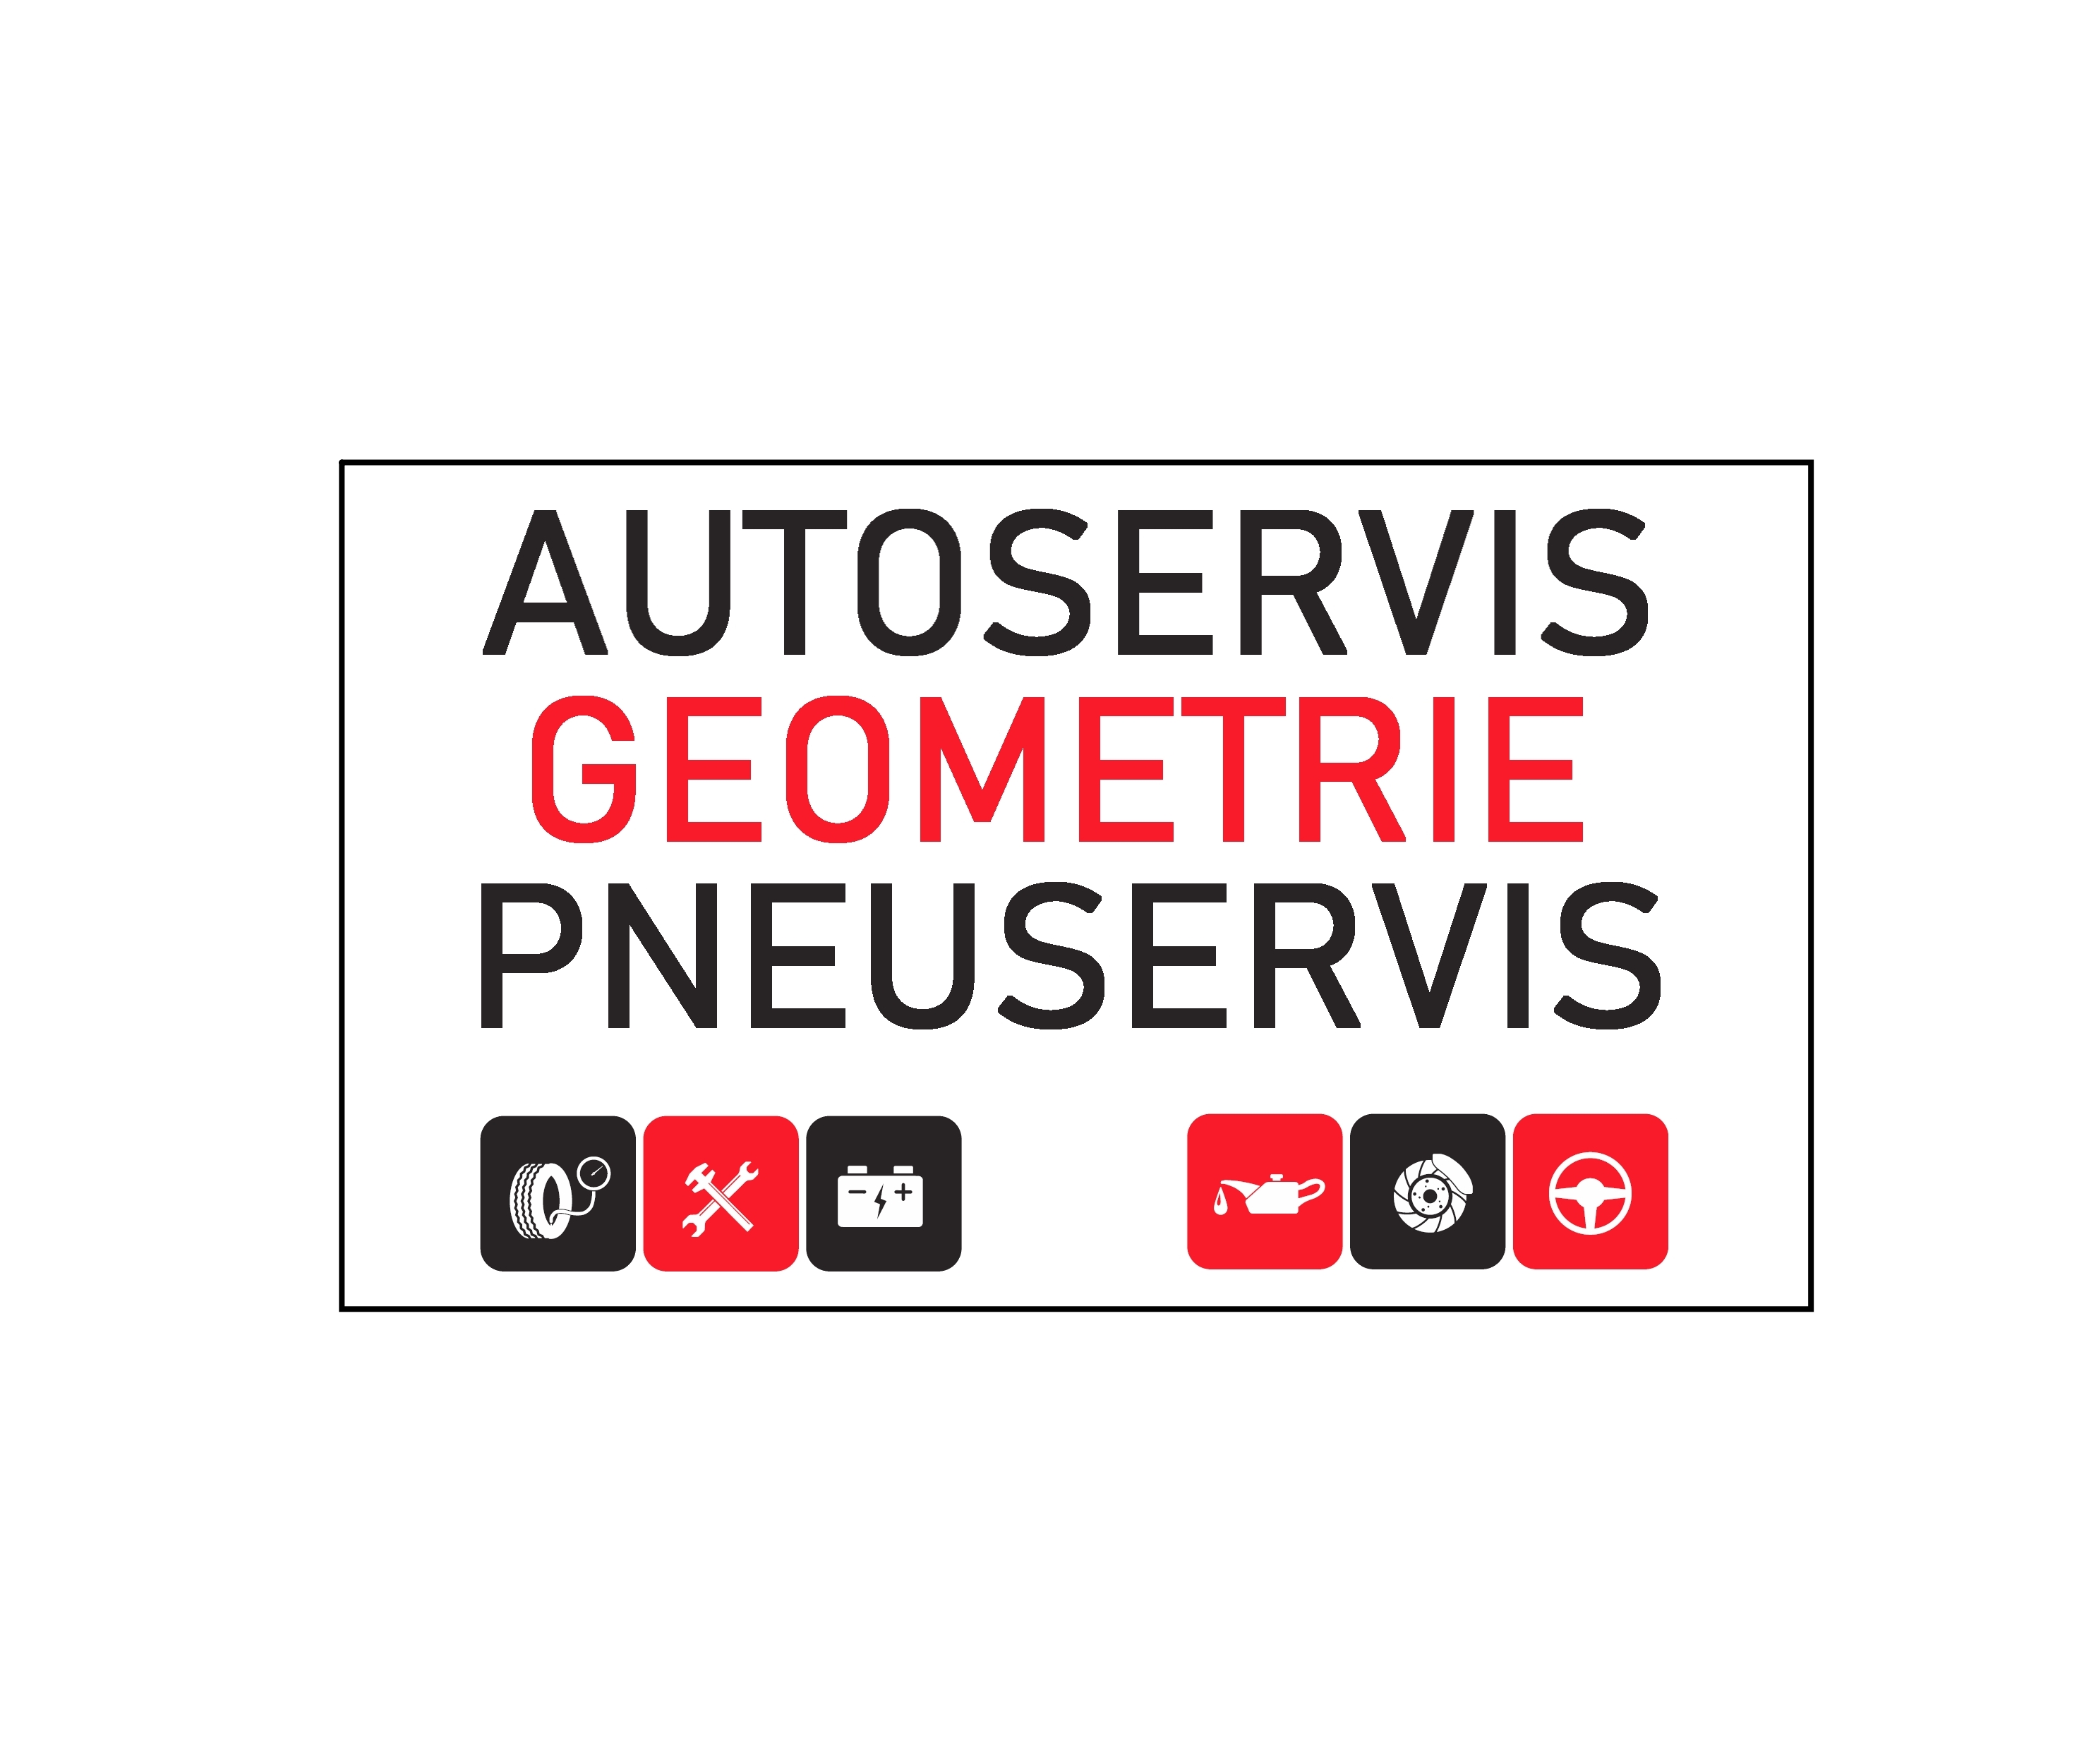 AUTOSERVIS - PNEUSERVIS - GEOMETRIE